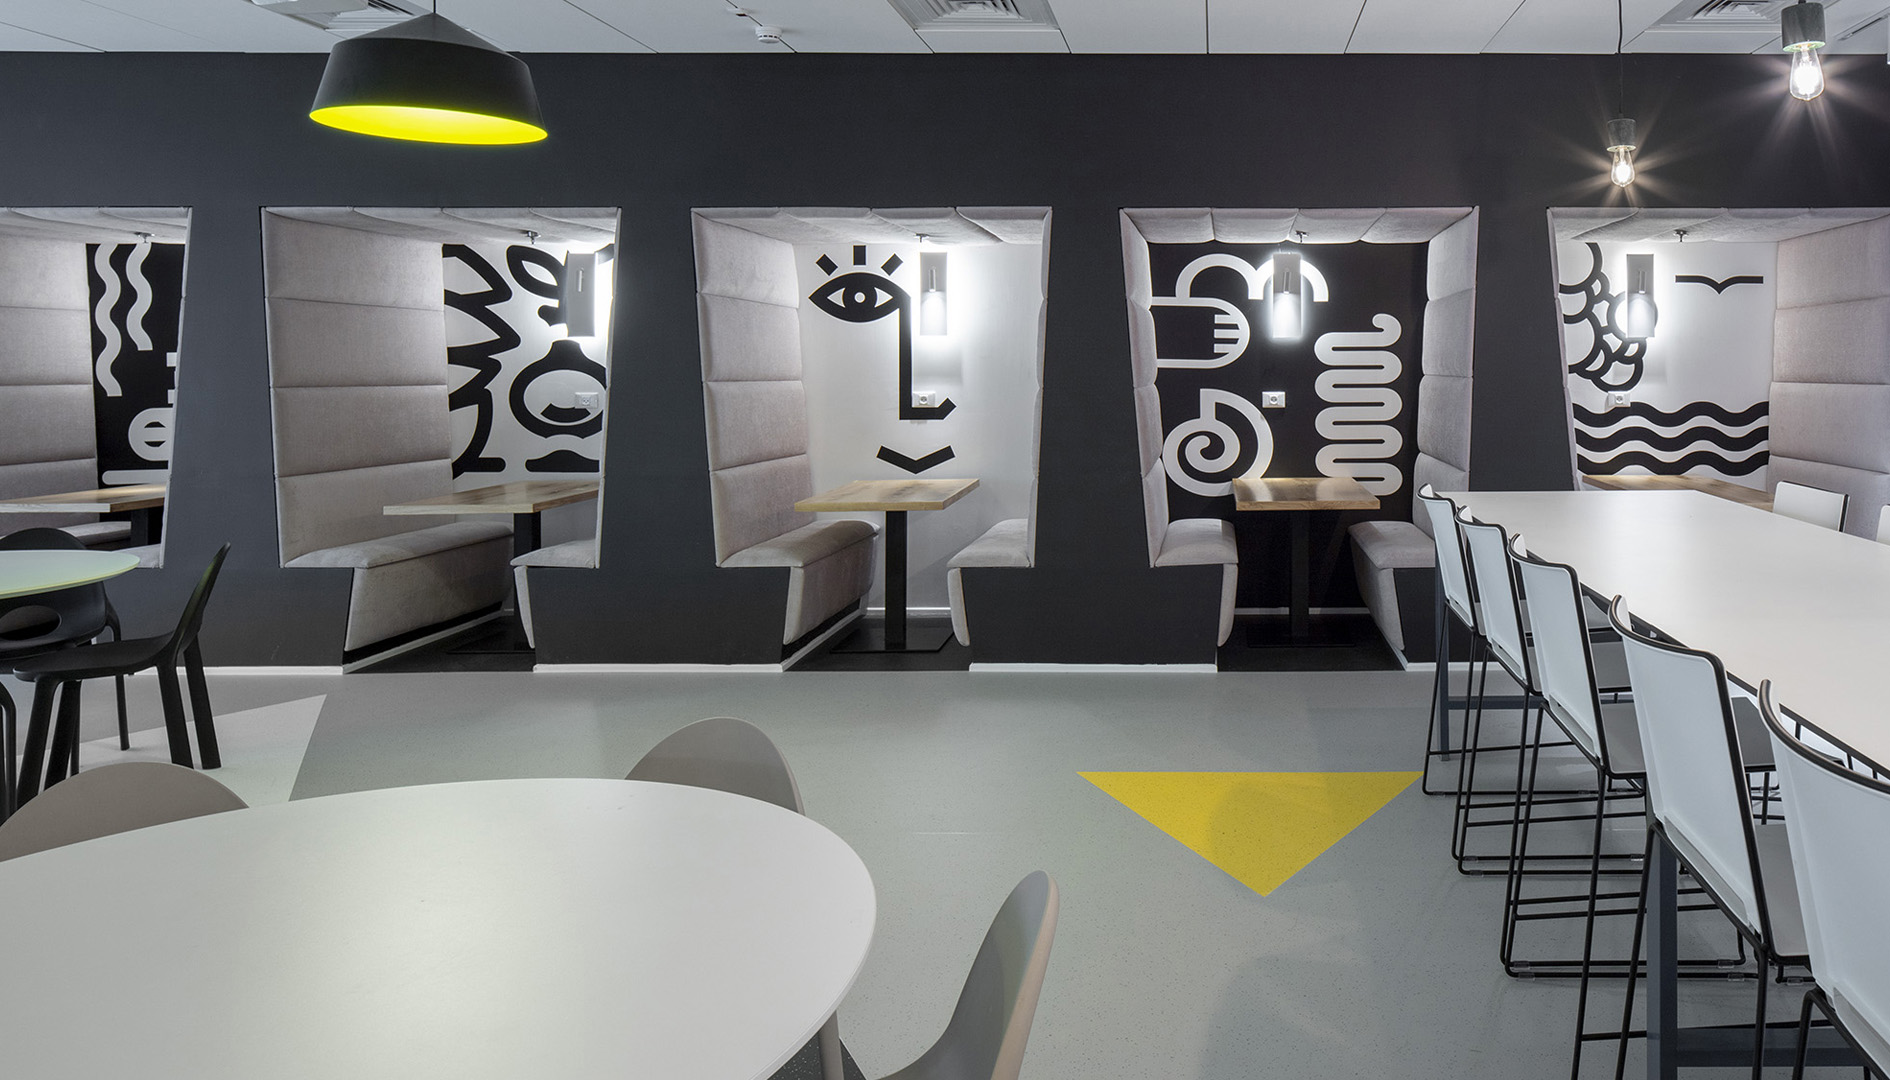 עיצוב משרדים | מיתוג גרפי | חברת אולסקרייפט | קפיטריה | עיצוב גרפי במרחב | מיתוג משרדים | עיצוב חללי עבודה | עיצוב קירות